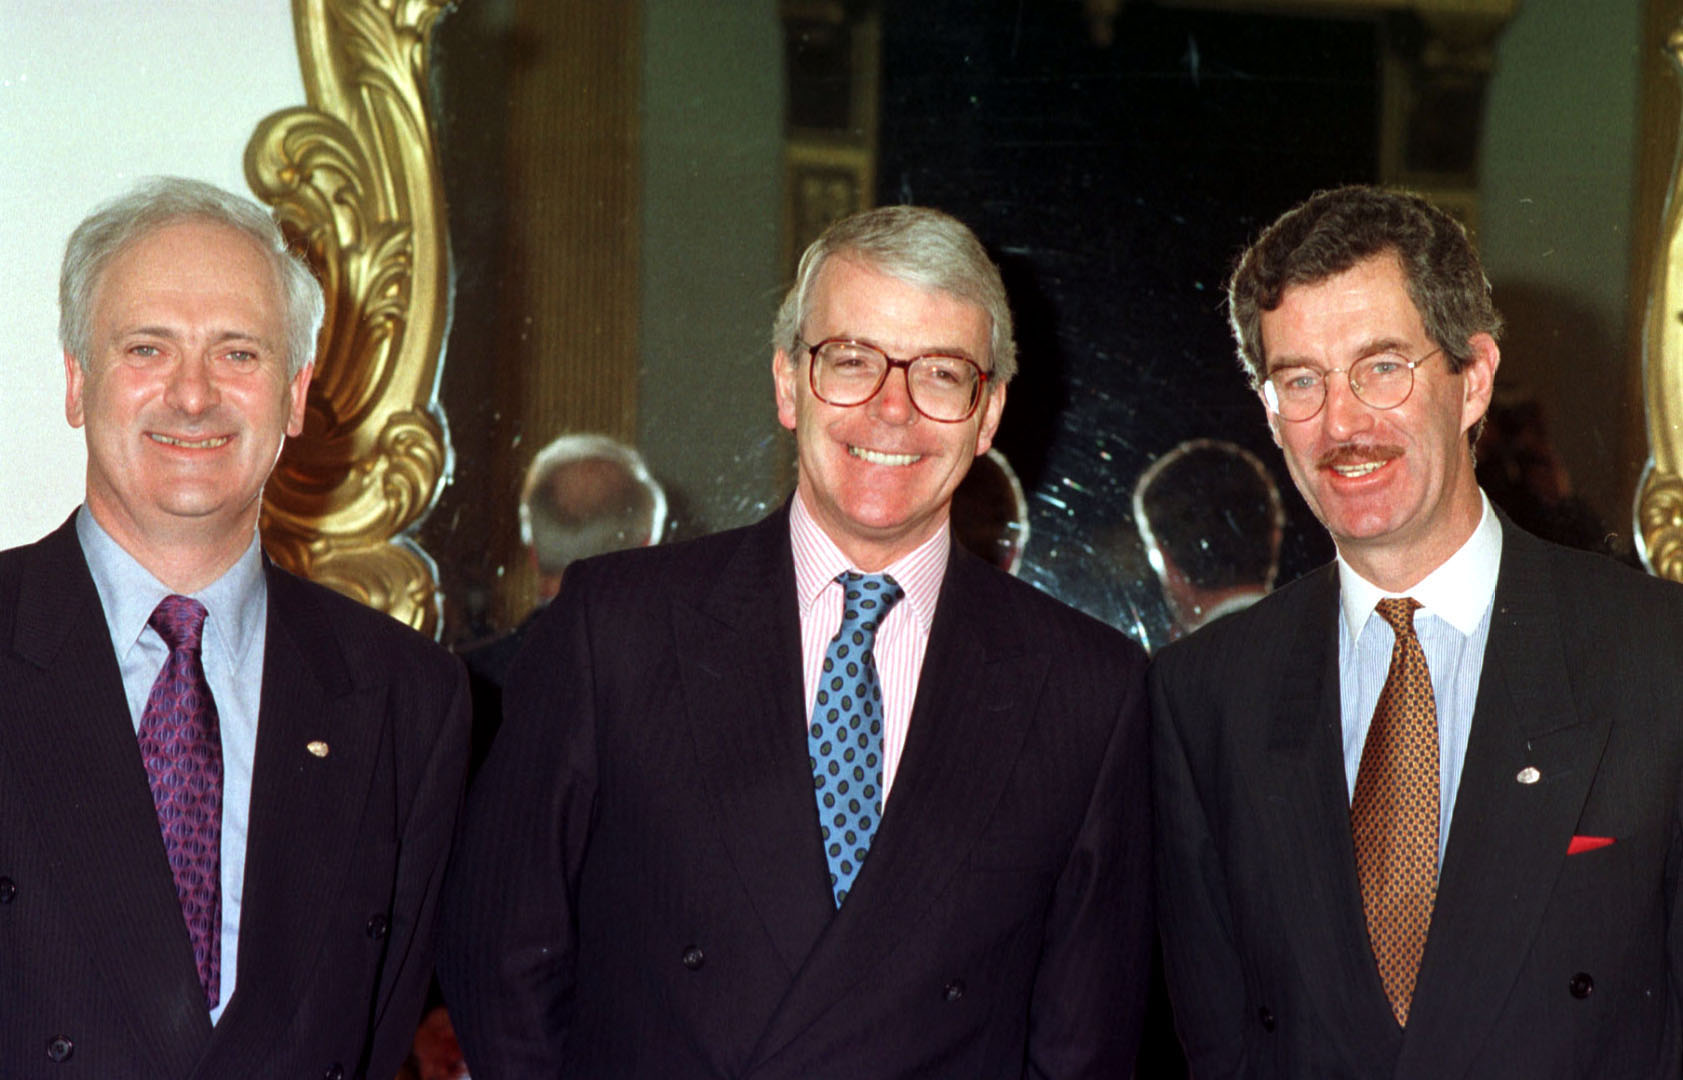 John Bruton (left) with then-British Prime Minister John Major and Tánaiste Dick Spring in Dublin, 13-12-96